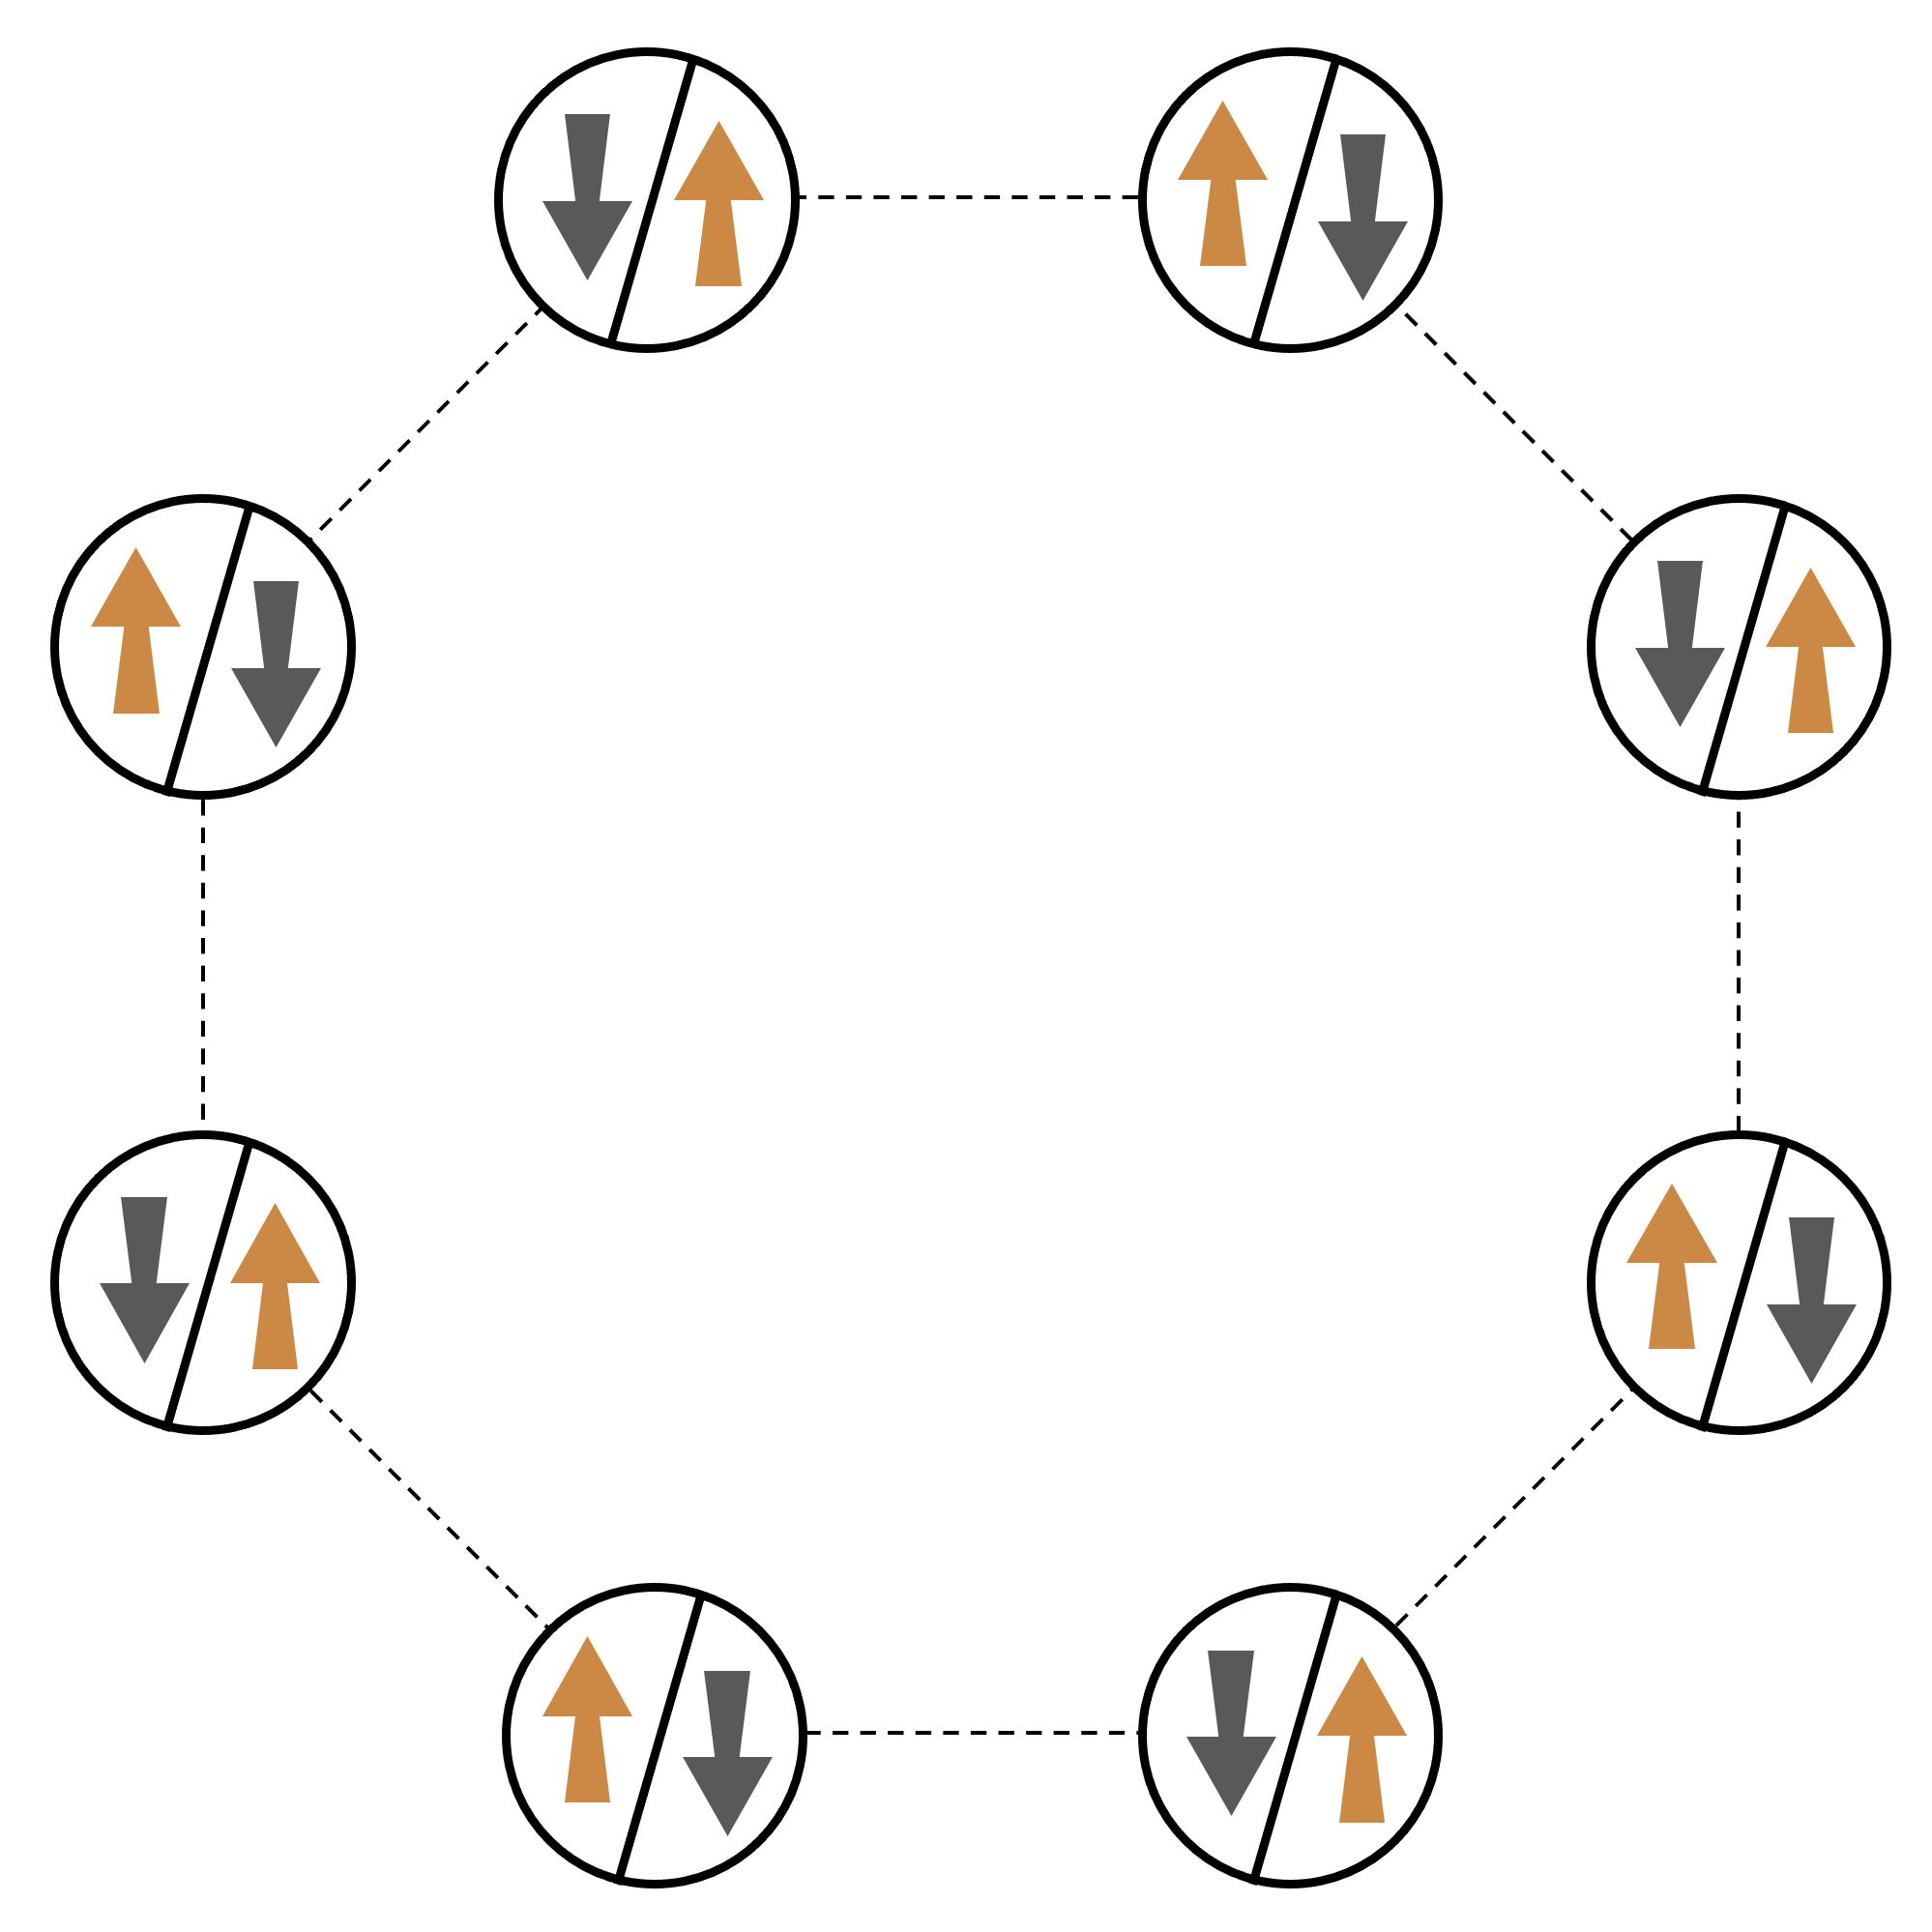 圖連接包含反向上和向下箭頭 8 圓節點。